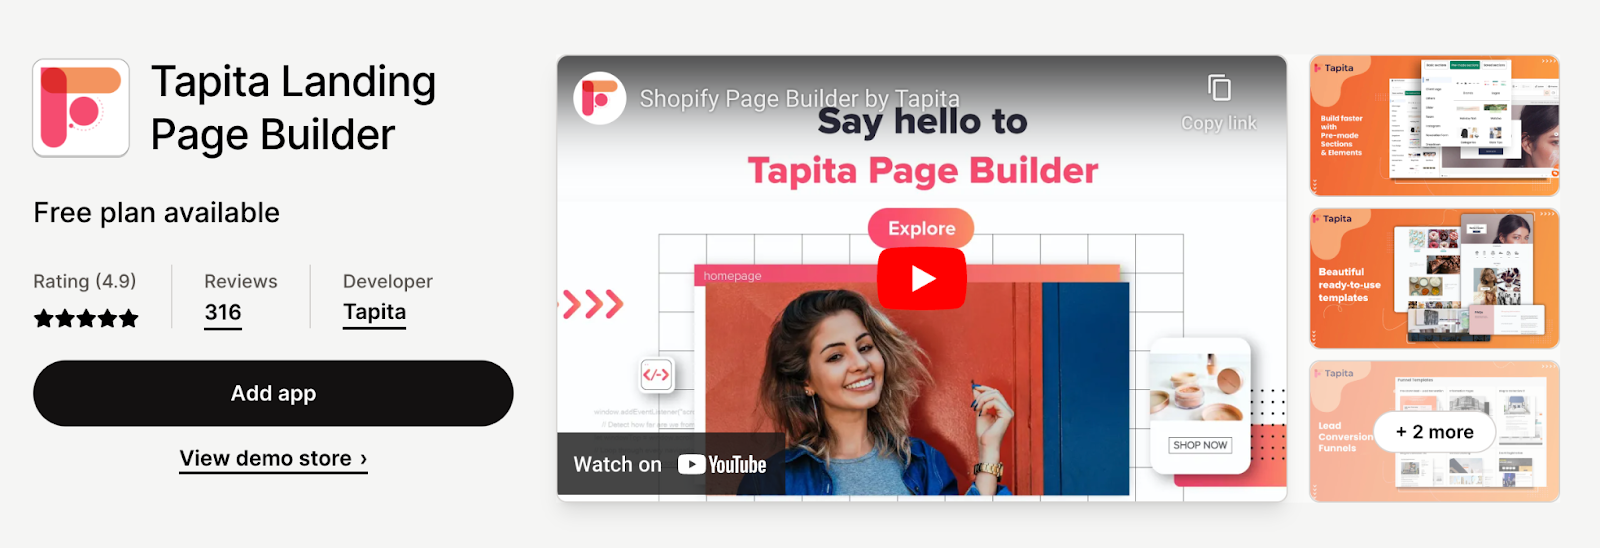 tapita page builder